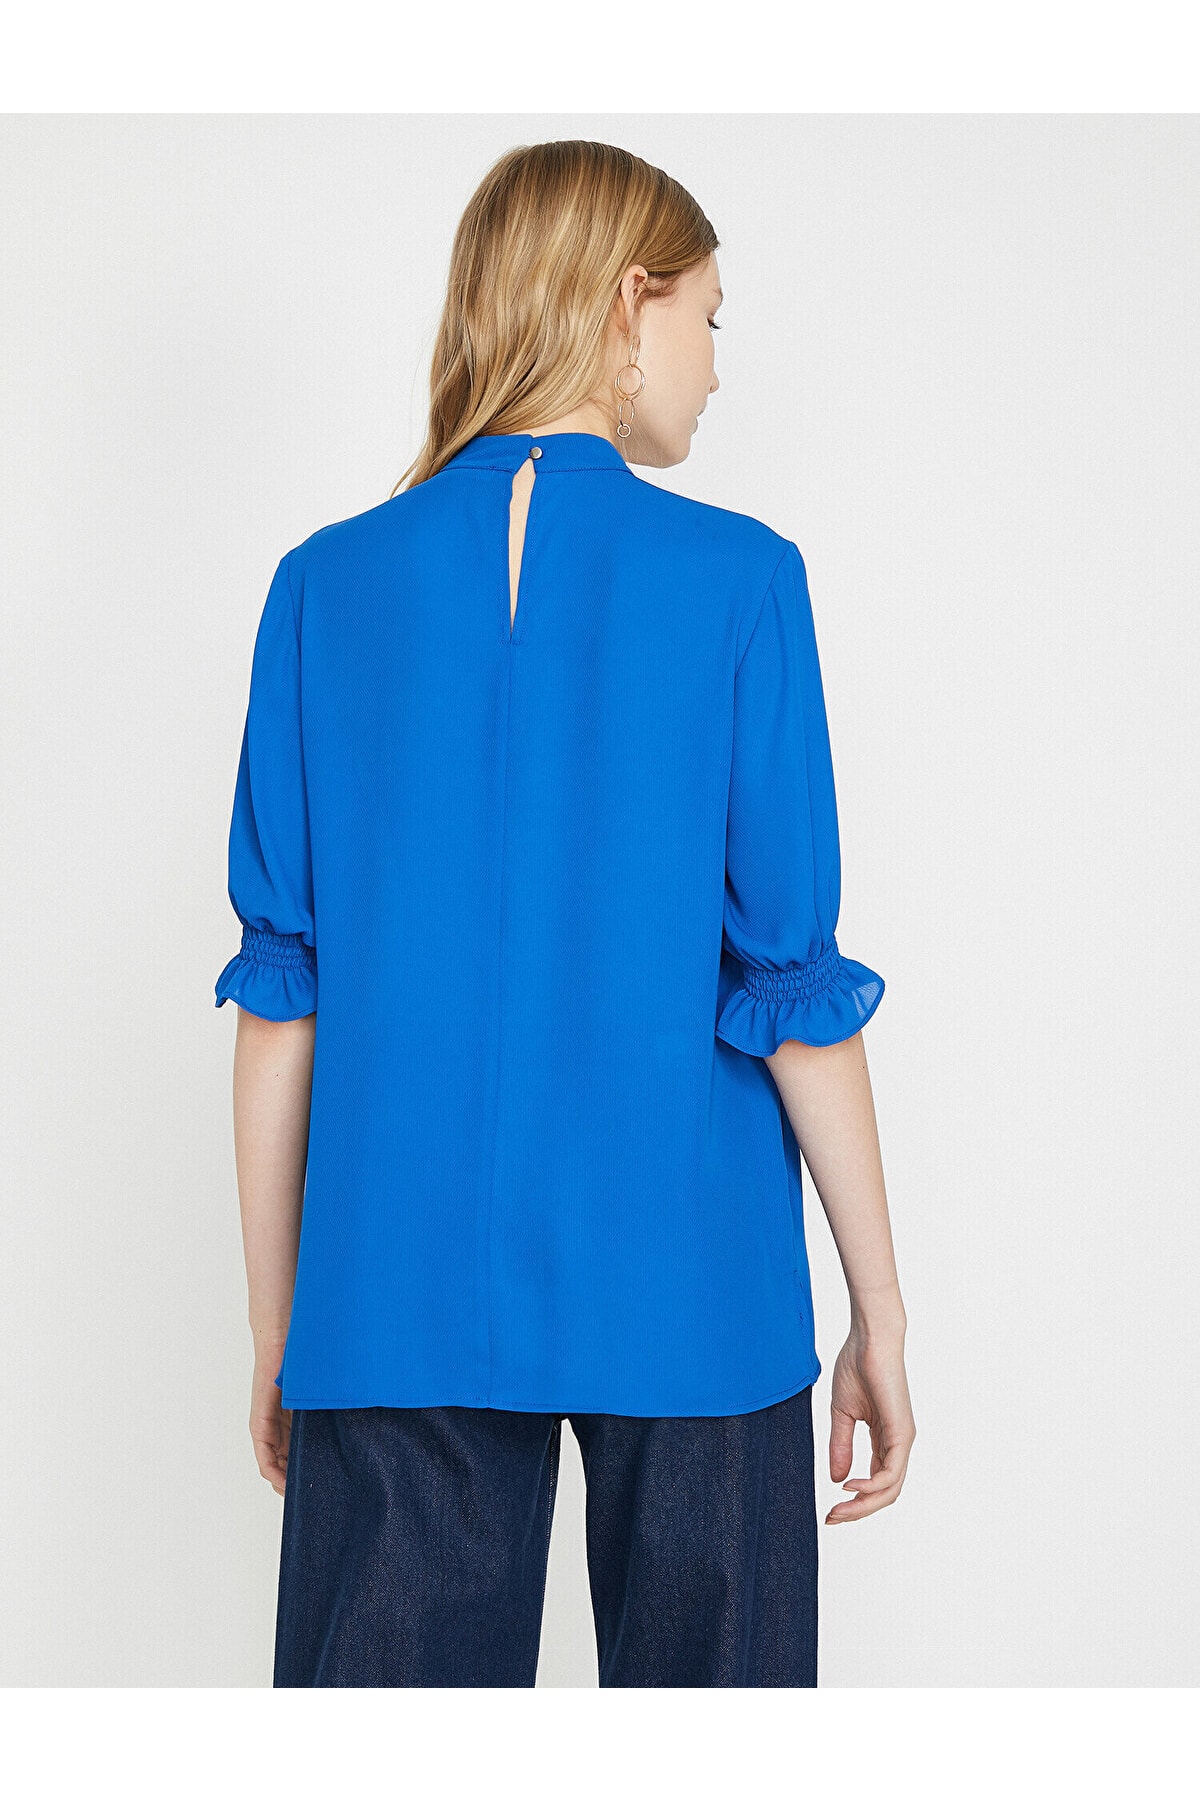 Koton Bluse Blau Regular Fit Fast ausverkauft